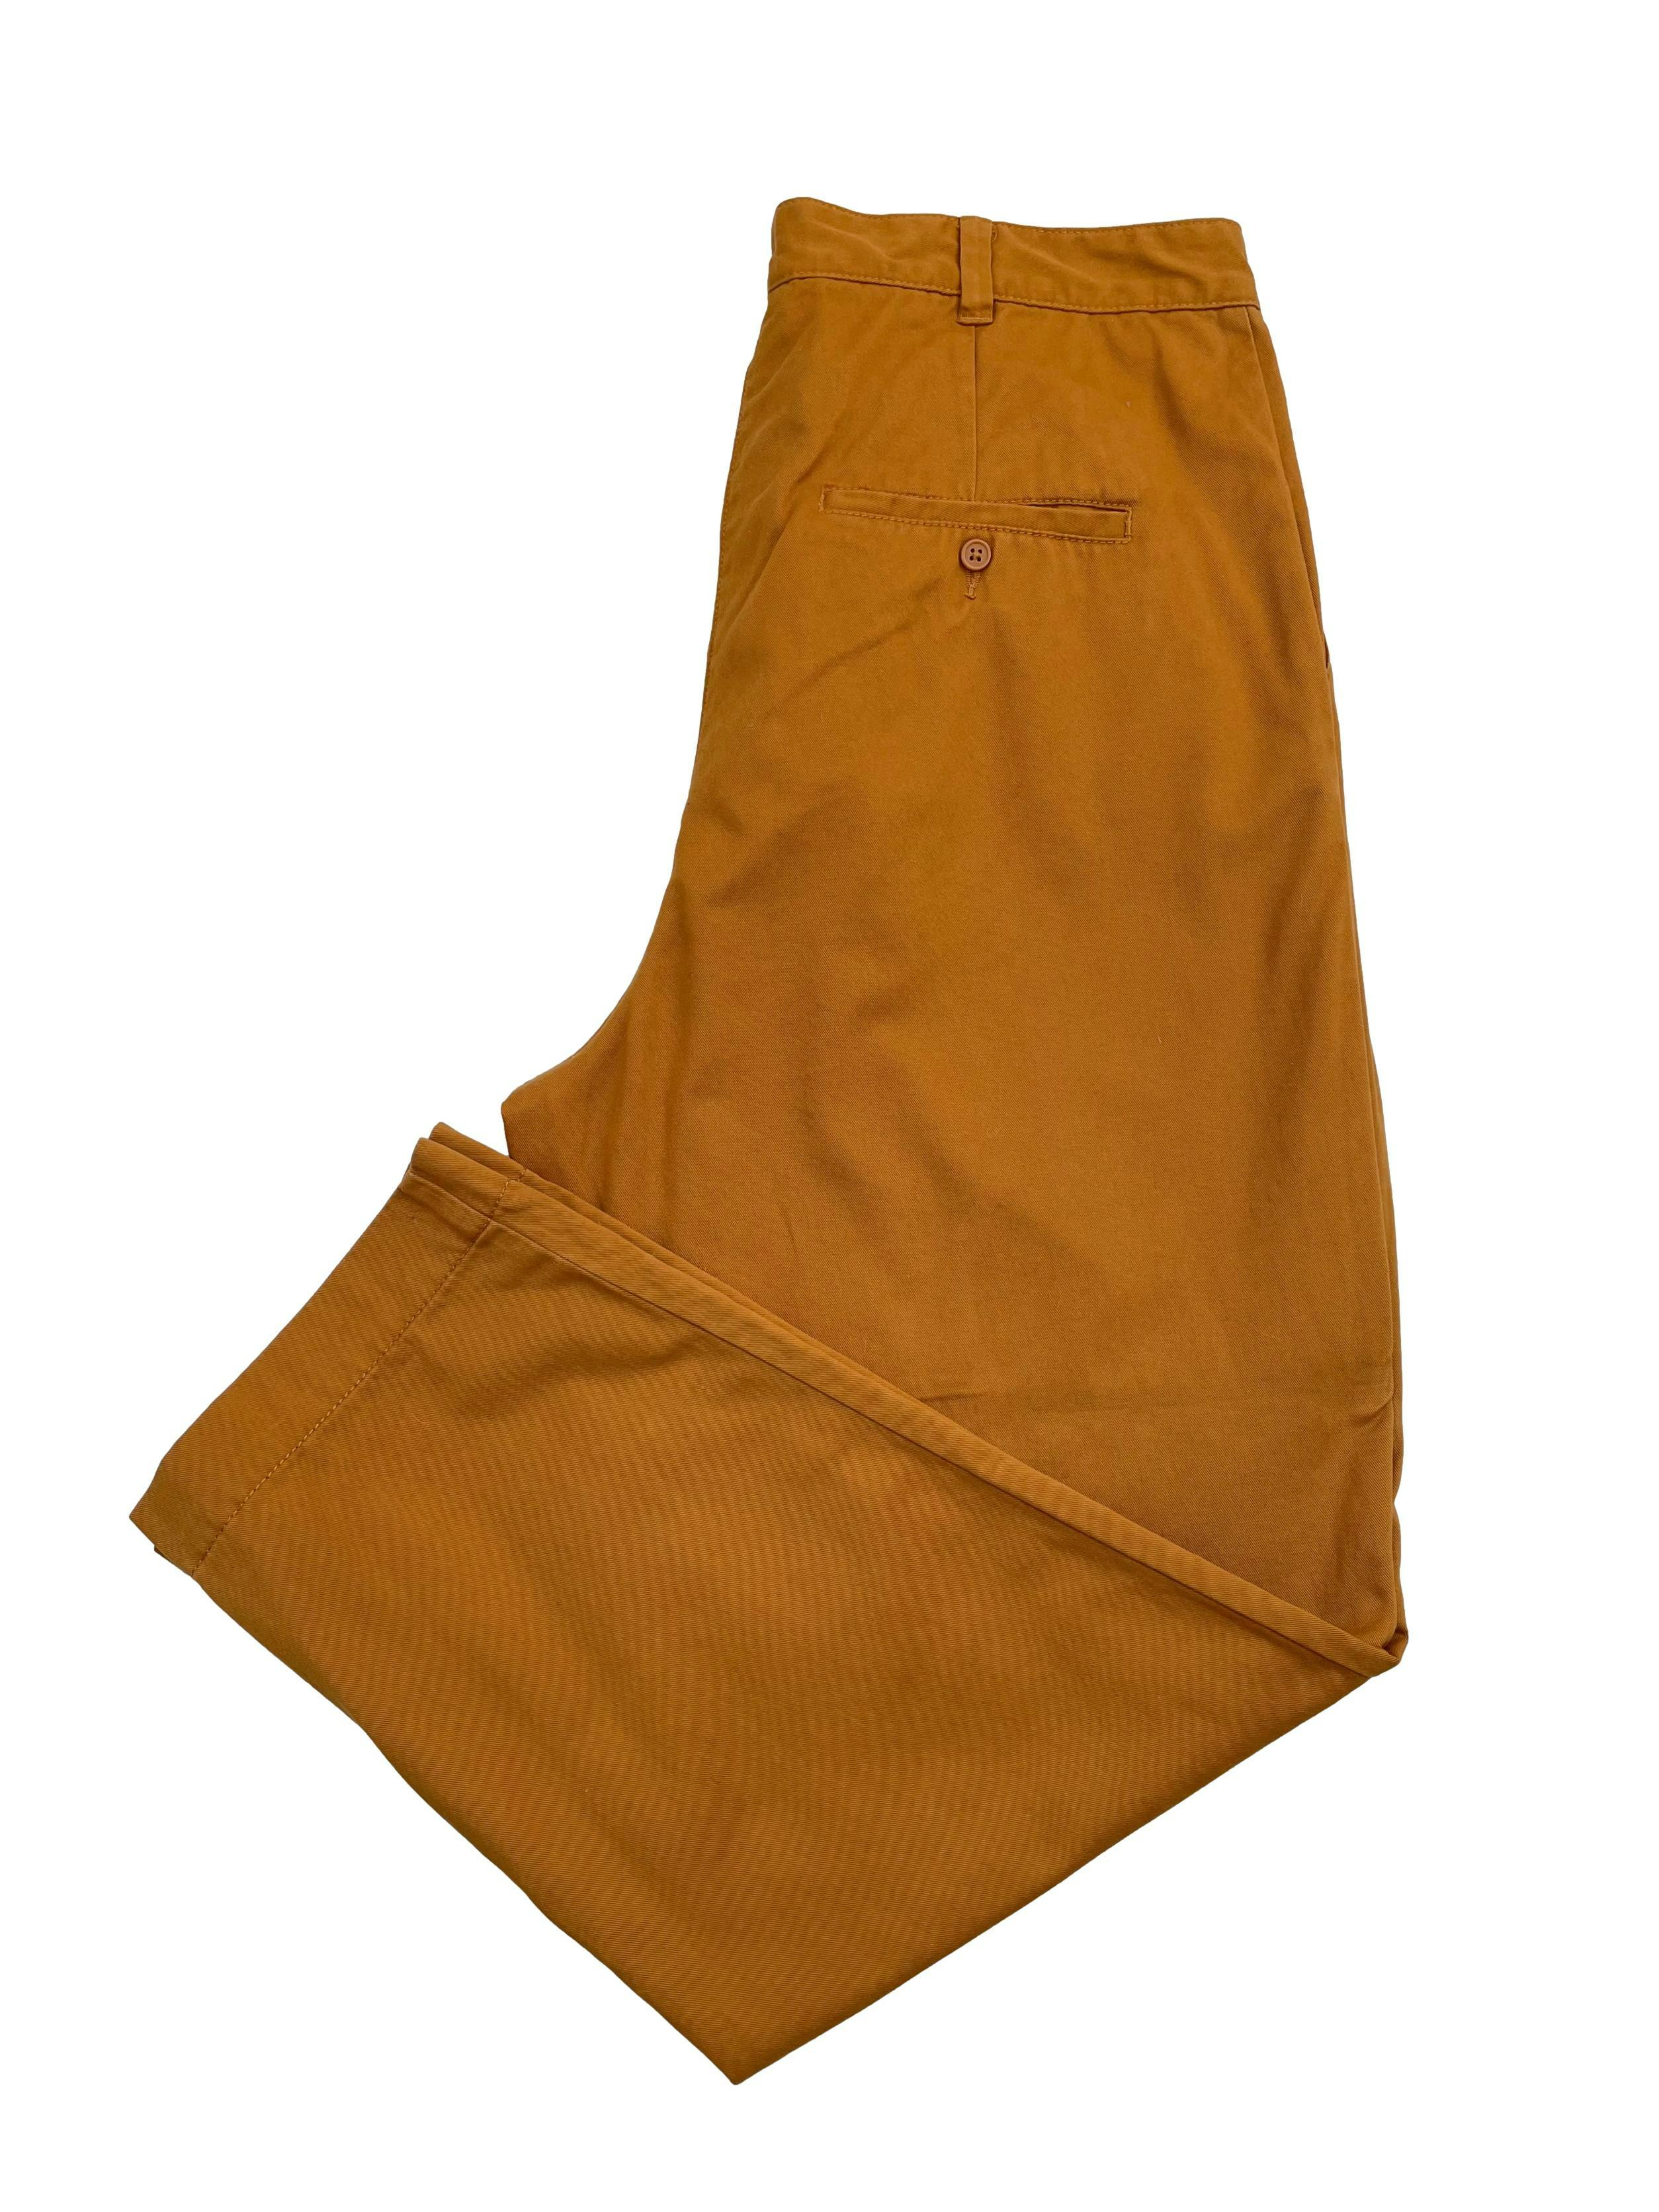 Pantalón Monki de drill 100% algodón camel, con pinzas, bolsillos laterales y traseros. Cintura 88cm Largo 102cm